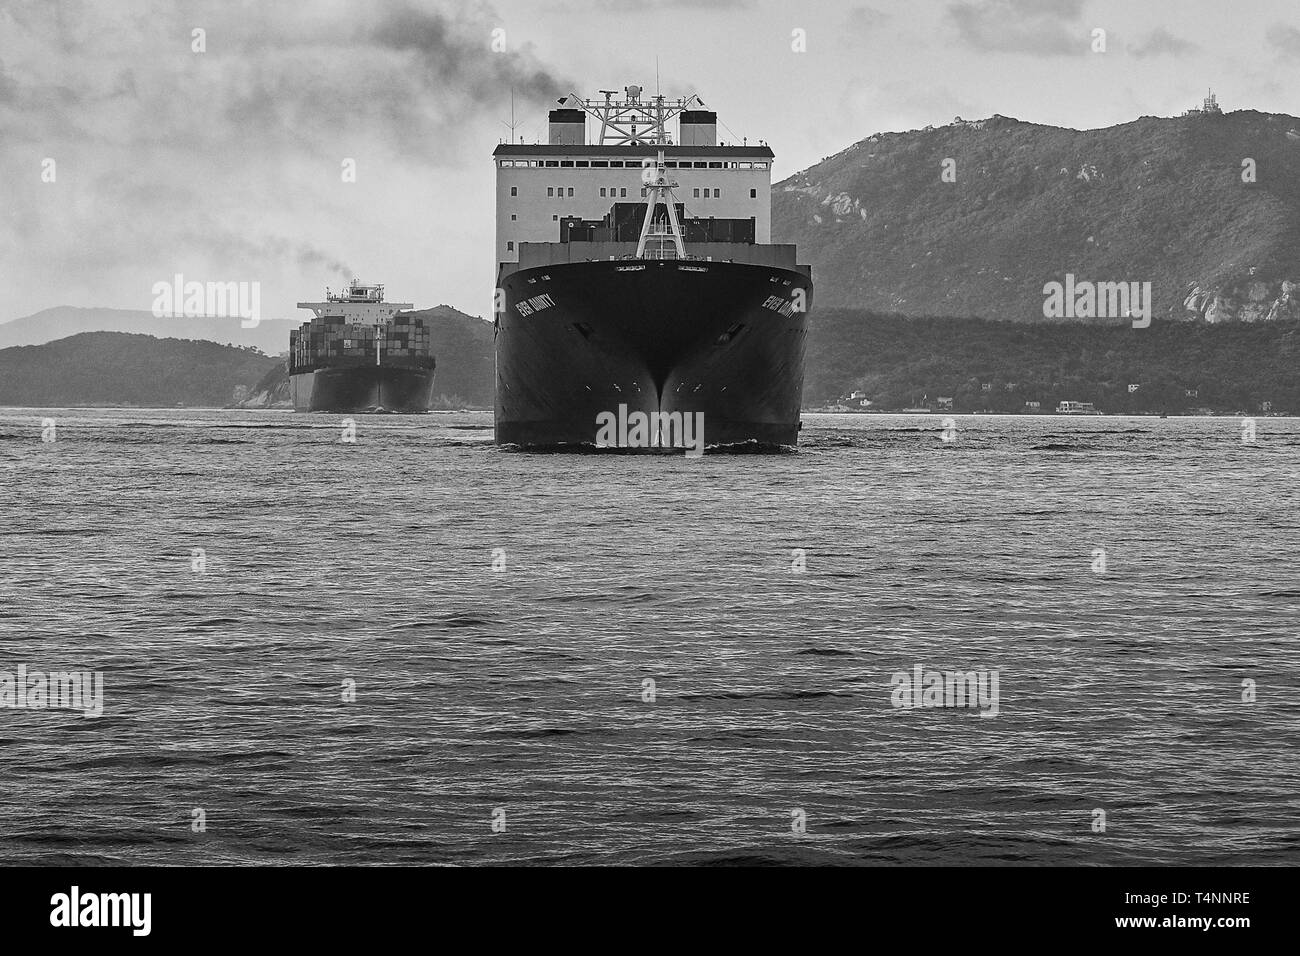 Foto in bianco e nero delle navi nel trafficato East Lamma Shipping Channel, diretti al terminal dei container Kwai Tsing, Hong Kong, Cina Foto Stock